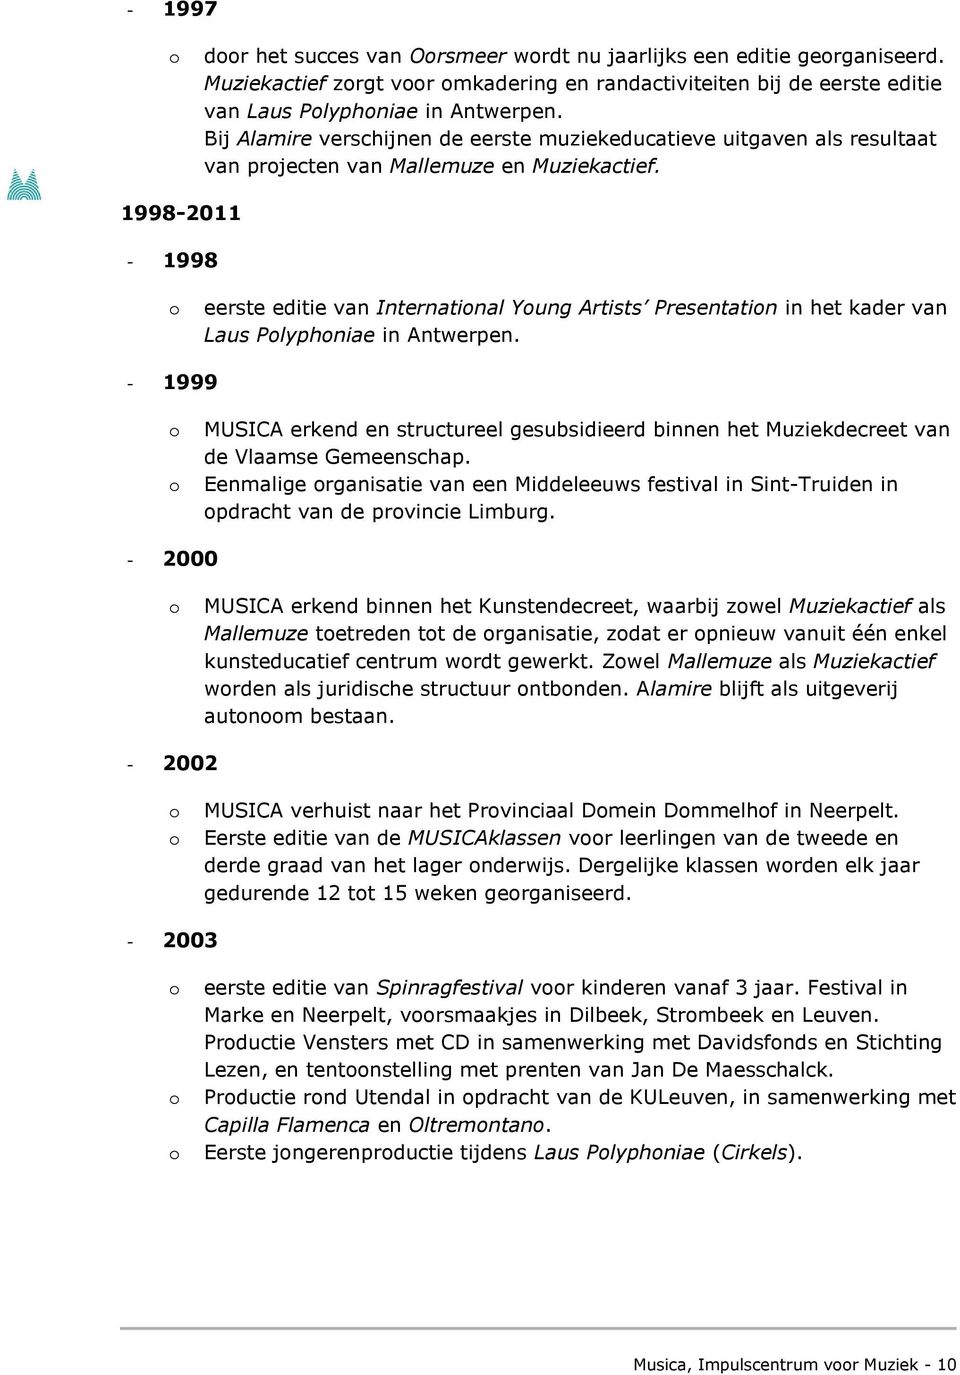 1998-2011 - 1998 eerste editie van Internatinal Yung Artists Presentatin in het kader van Laus Plyphniae in Antwerpen.